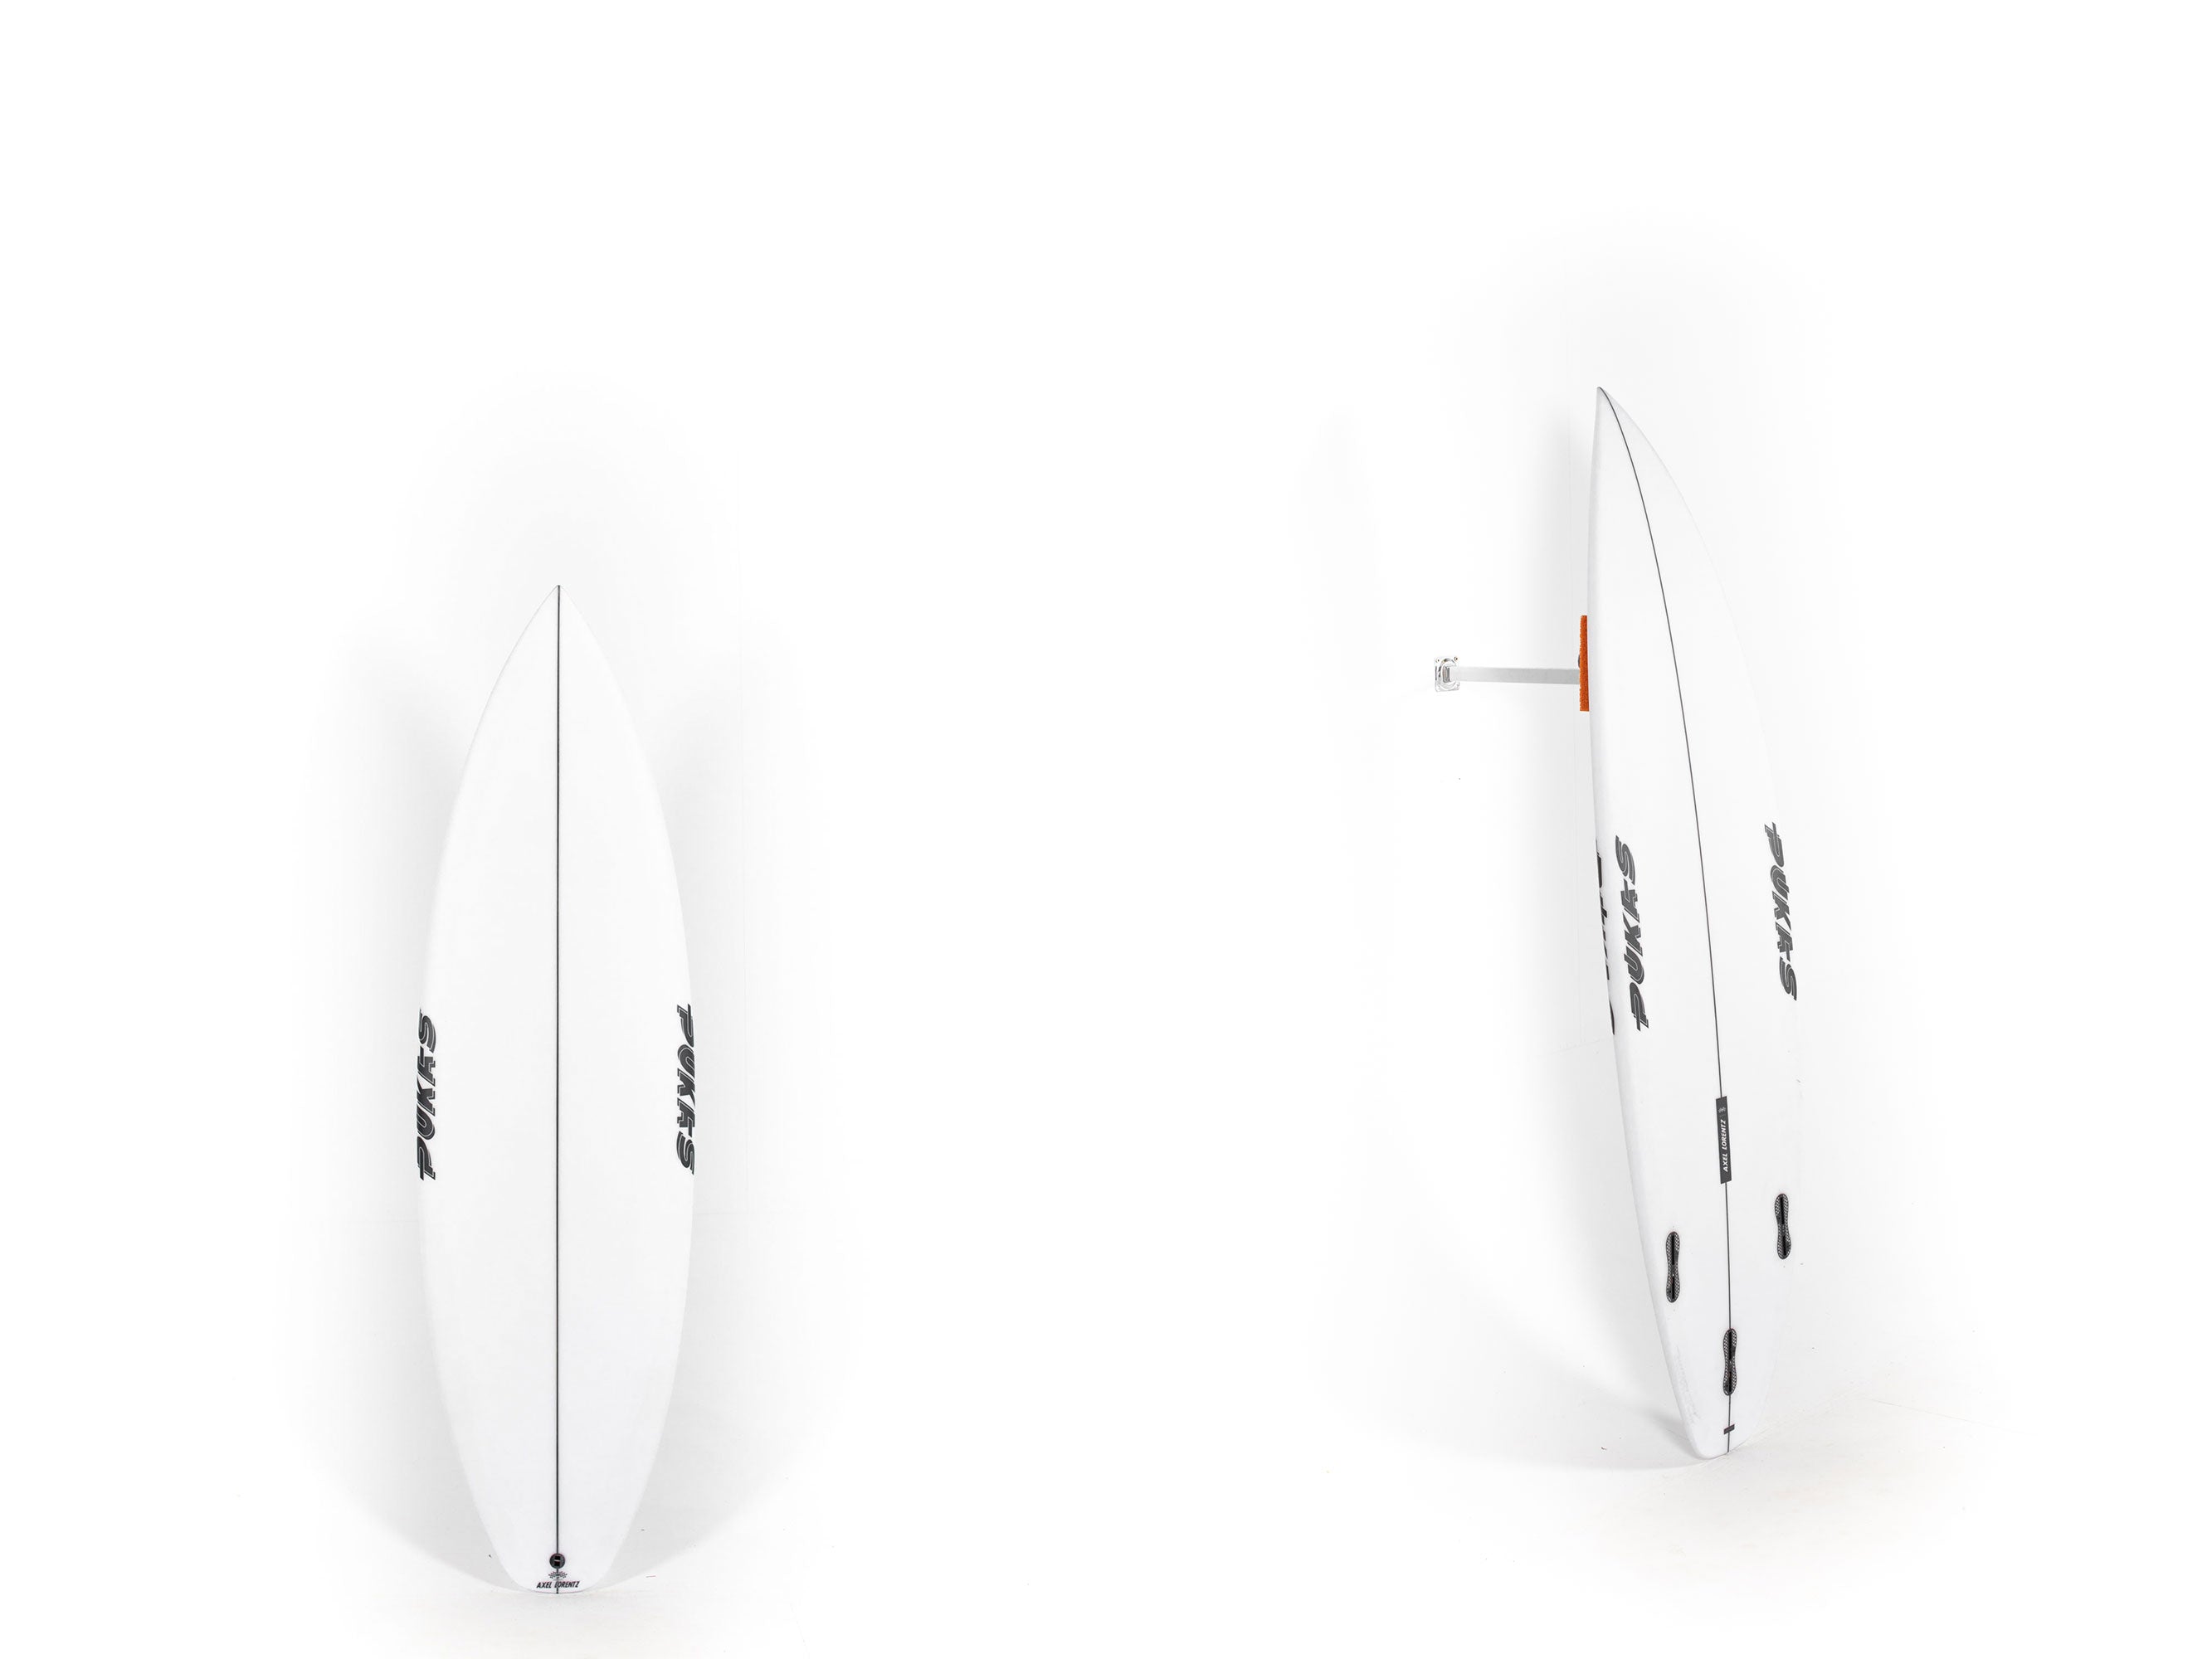 Pukas Surfboard - DARKER by Axel Lorentz - 5'8" x 19 x 2,25 x 25,9L. - AX08146